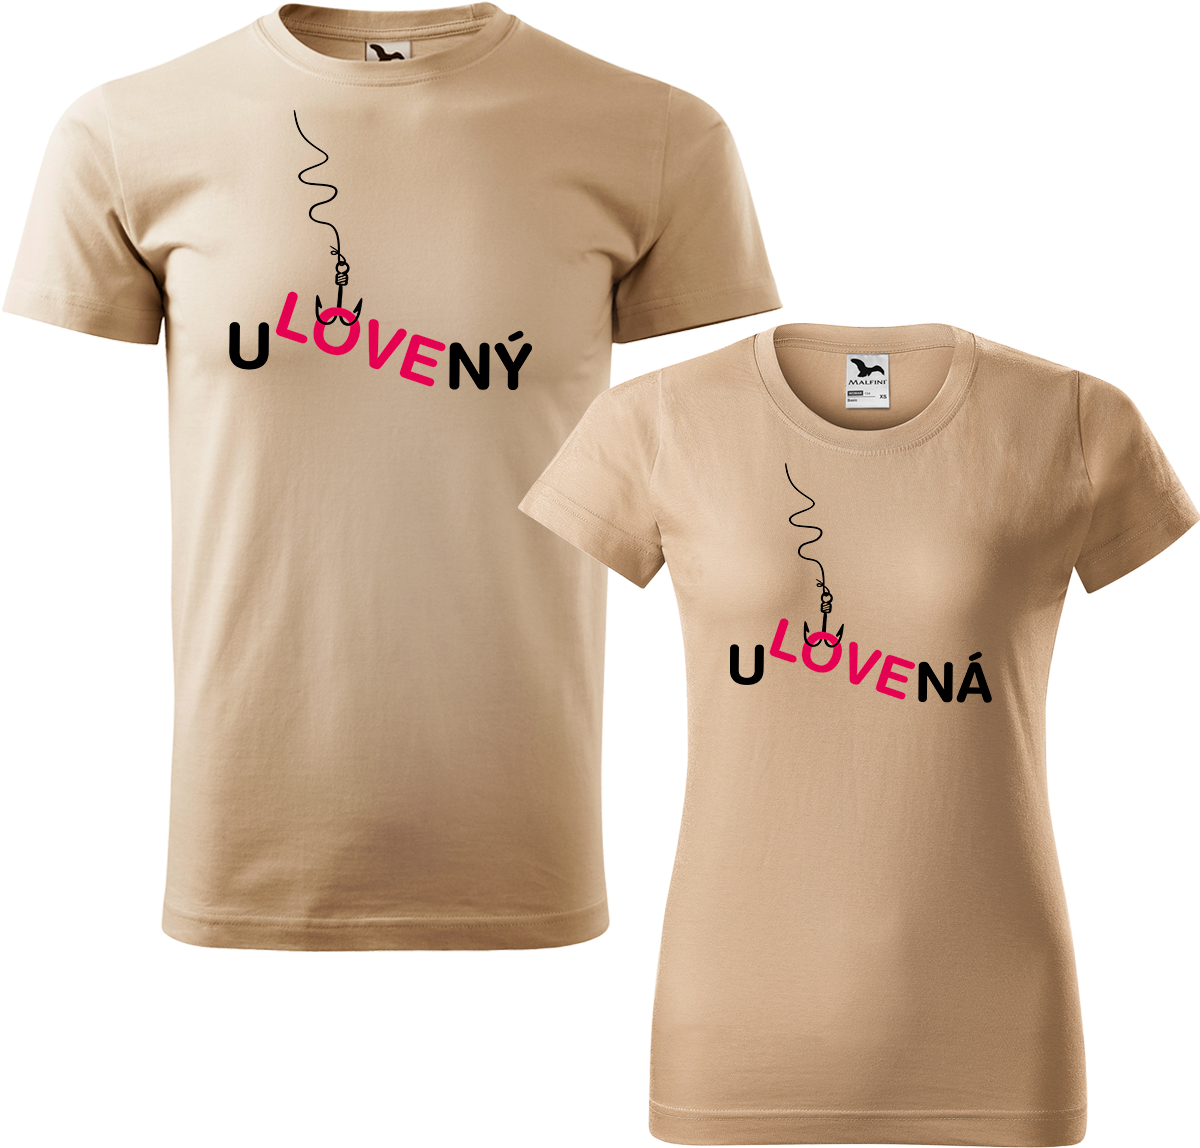 Trička pro páry - Ulovený a ulovená Barva: Písková (08), Velikost dámské tričko: XL, Velikost pánské tričko: XL